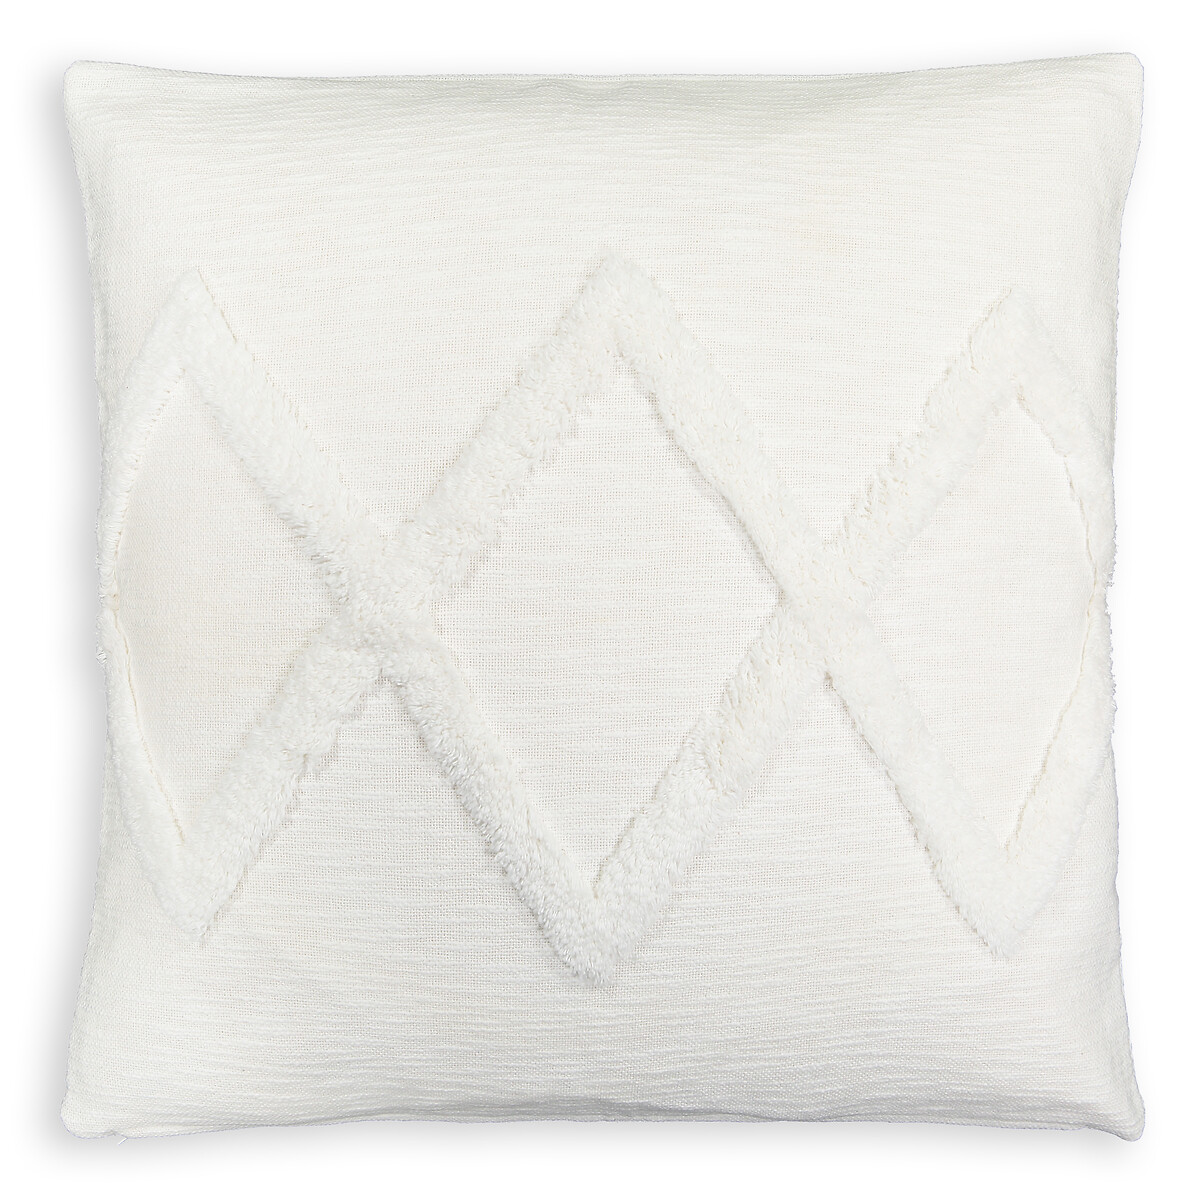 Чехол LA REDOUTE INTERIEURS На подушку из ворсовой хлопковой ткани  Assa 65 x 65 см белый, размер 65 x 65 см - фото 1